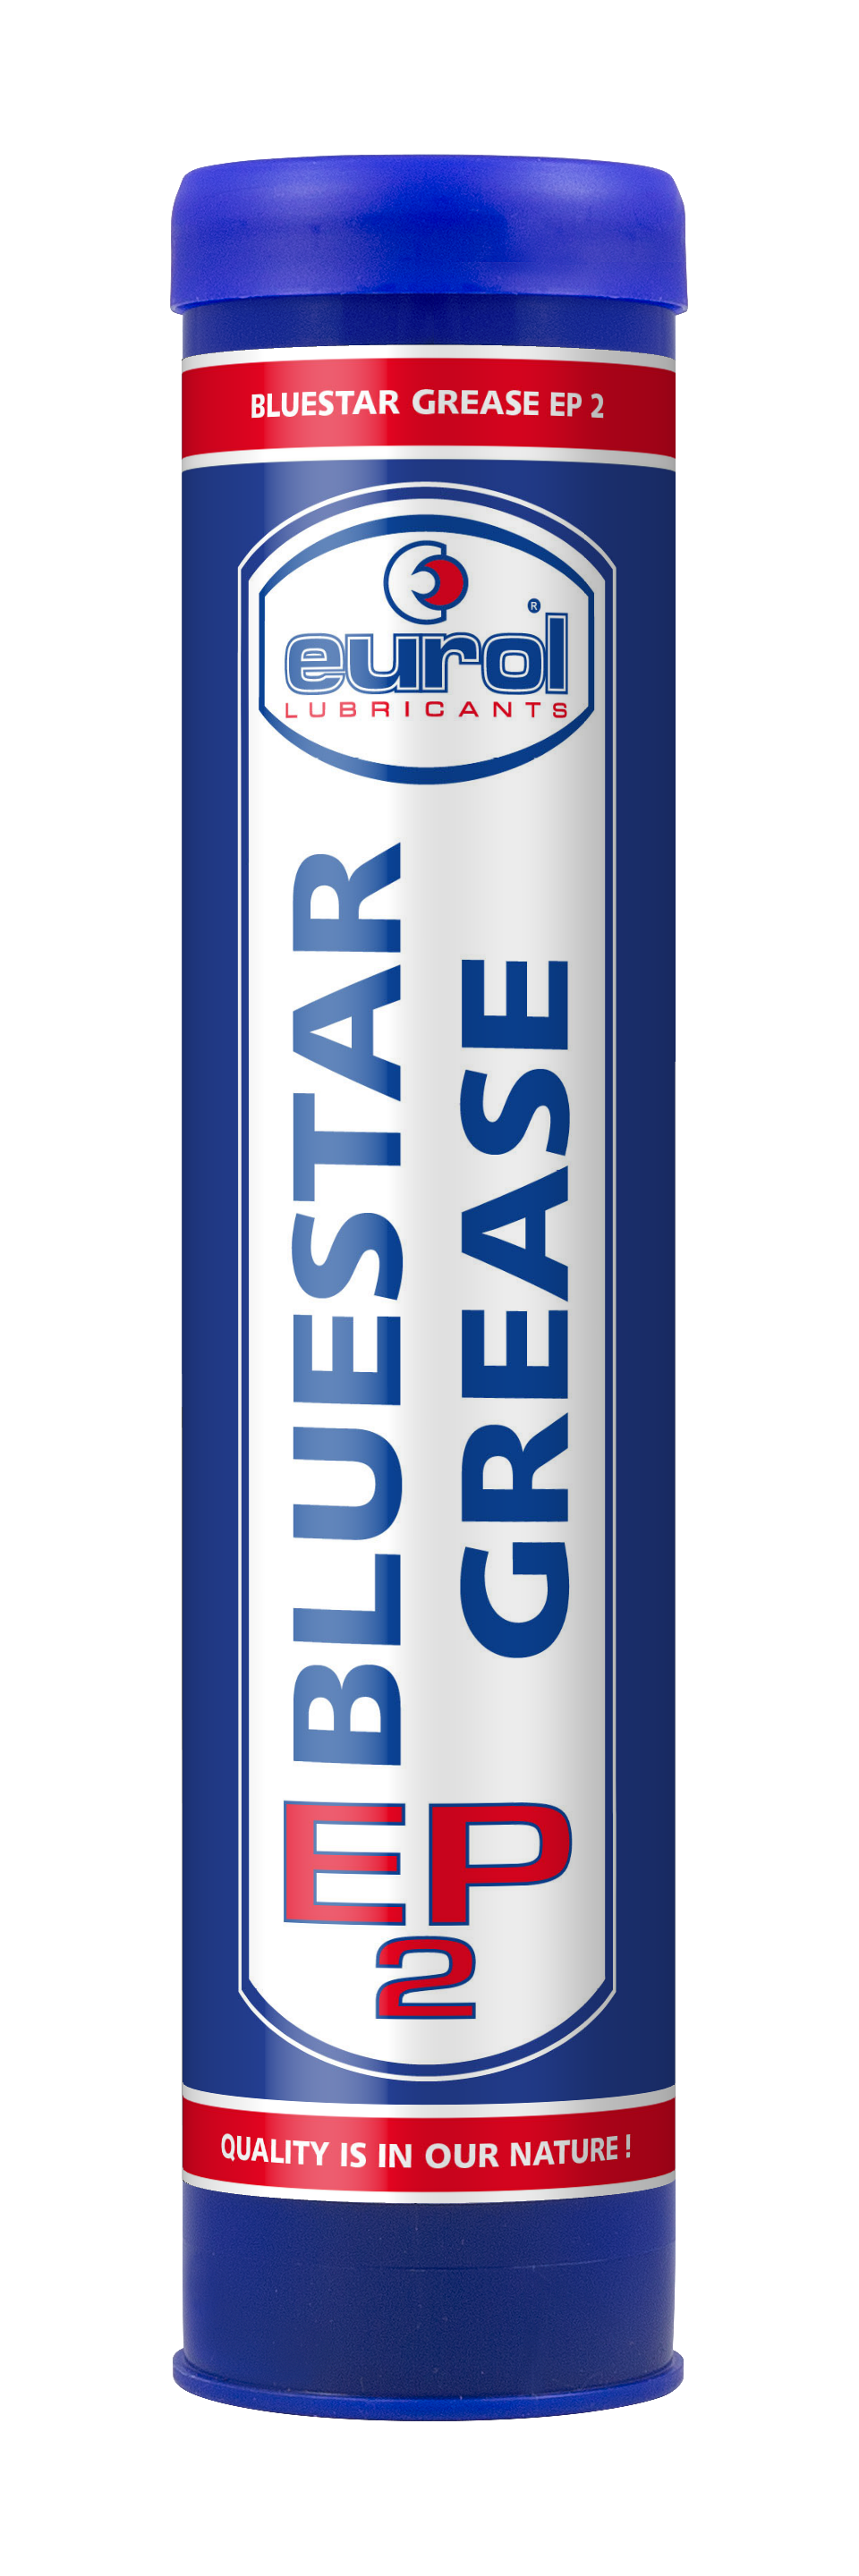 Eurol BlueStar Grease EP 2